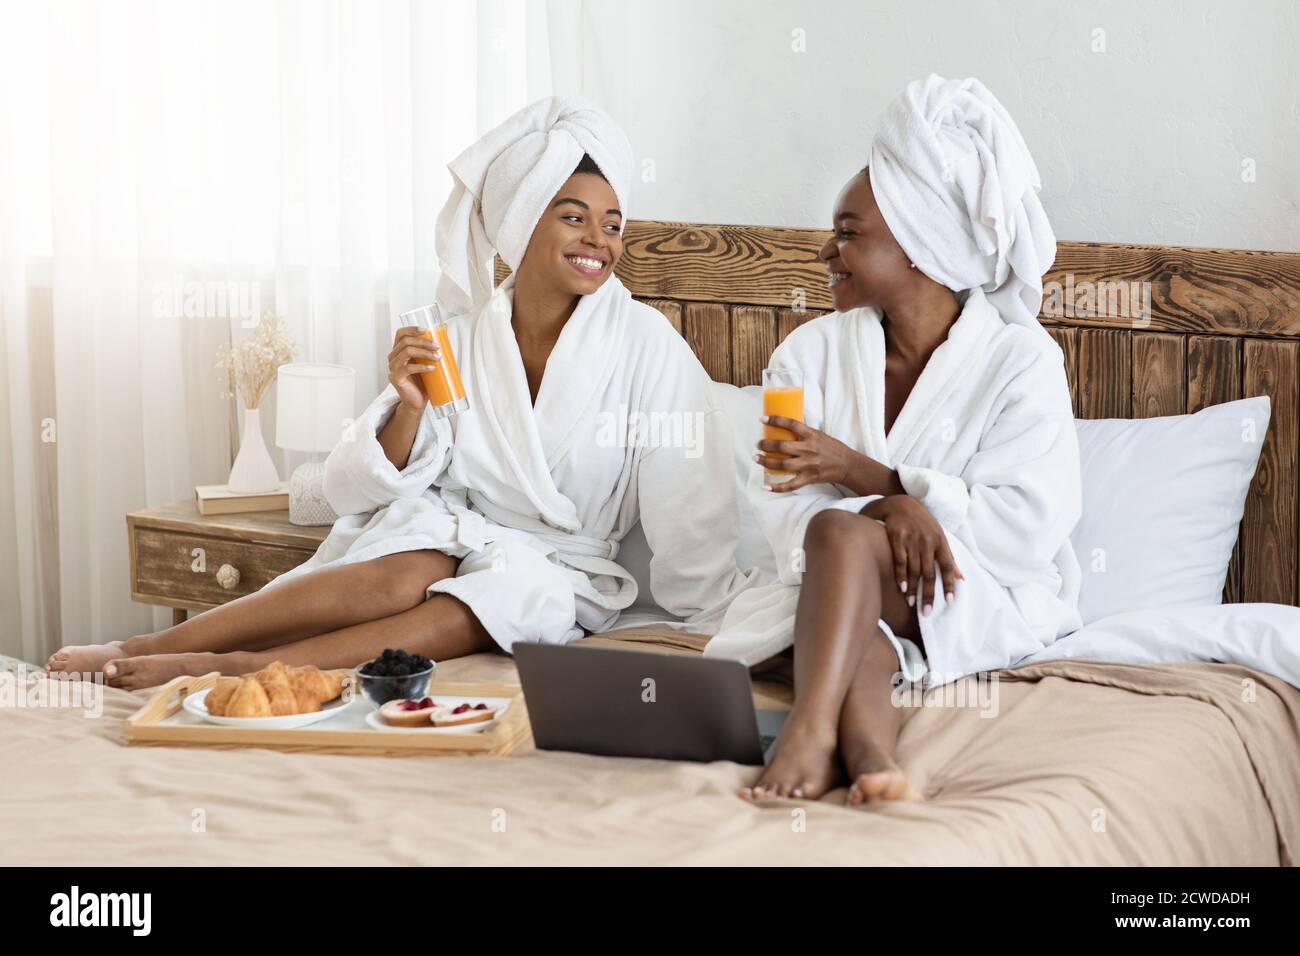 Zwei fröhliche schwarze Frauen beim Frühstück im Bett Stockfotografie -  Alamy